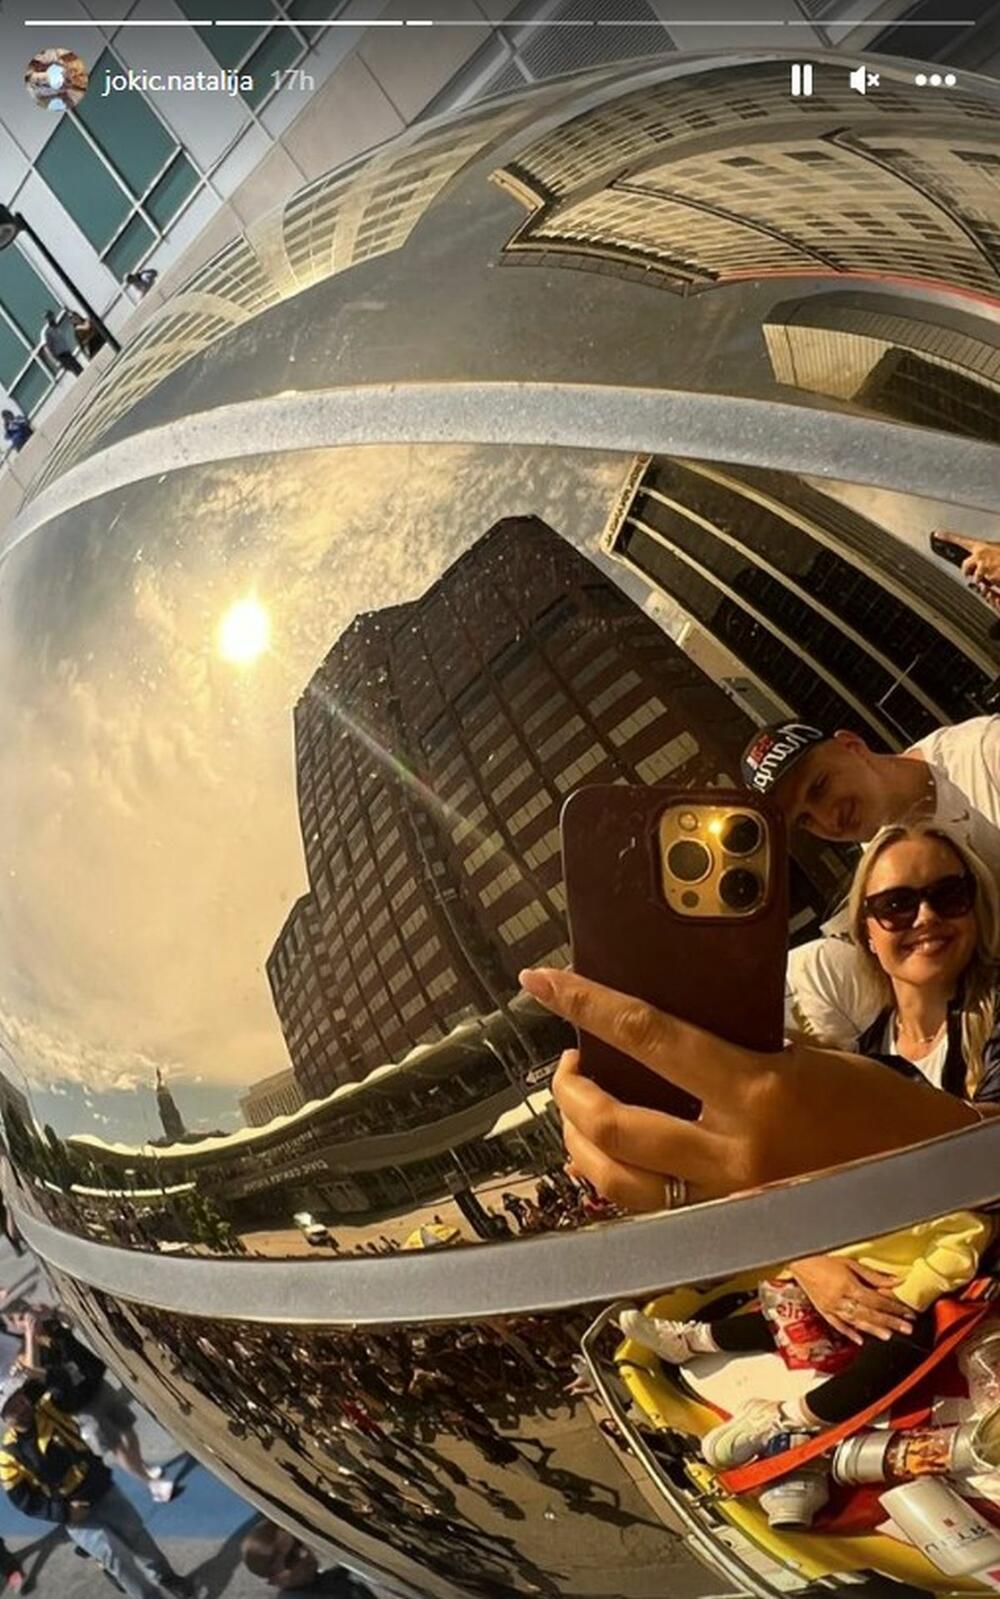 Natalija i Nikola Jokić su sa ćerkom Ognjenom uživali na paradi u Denveru, uprkos incidentu kada je košarkaševa supruga pogođena limenkom u lice